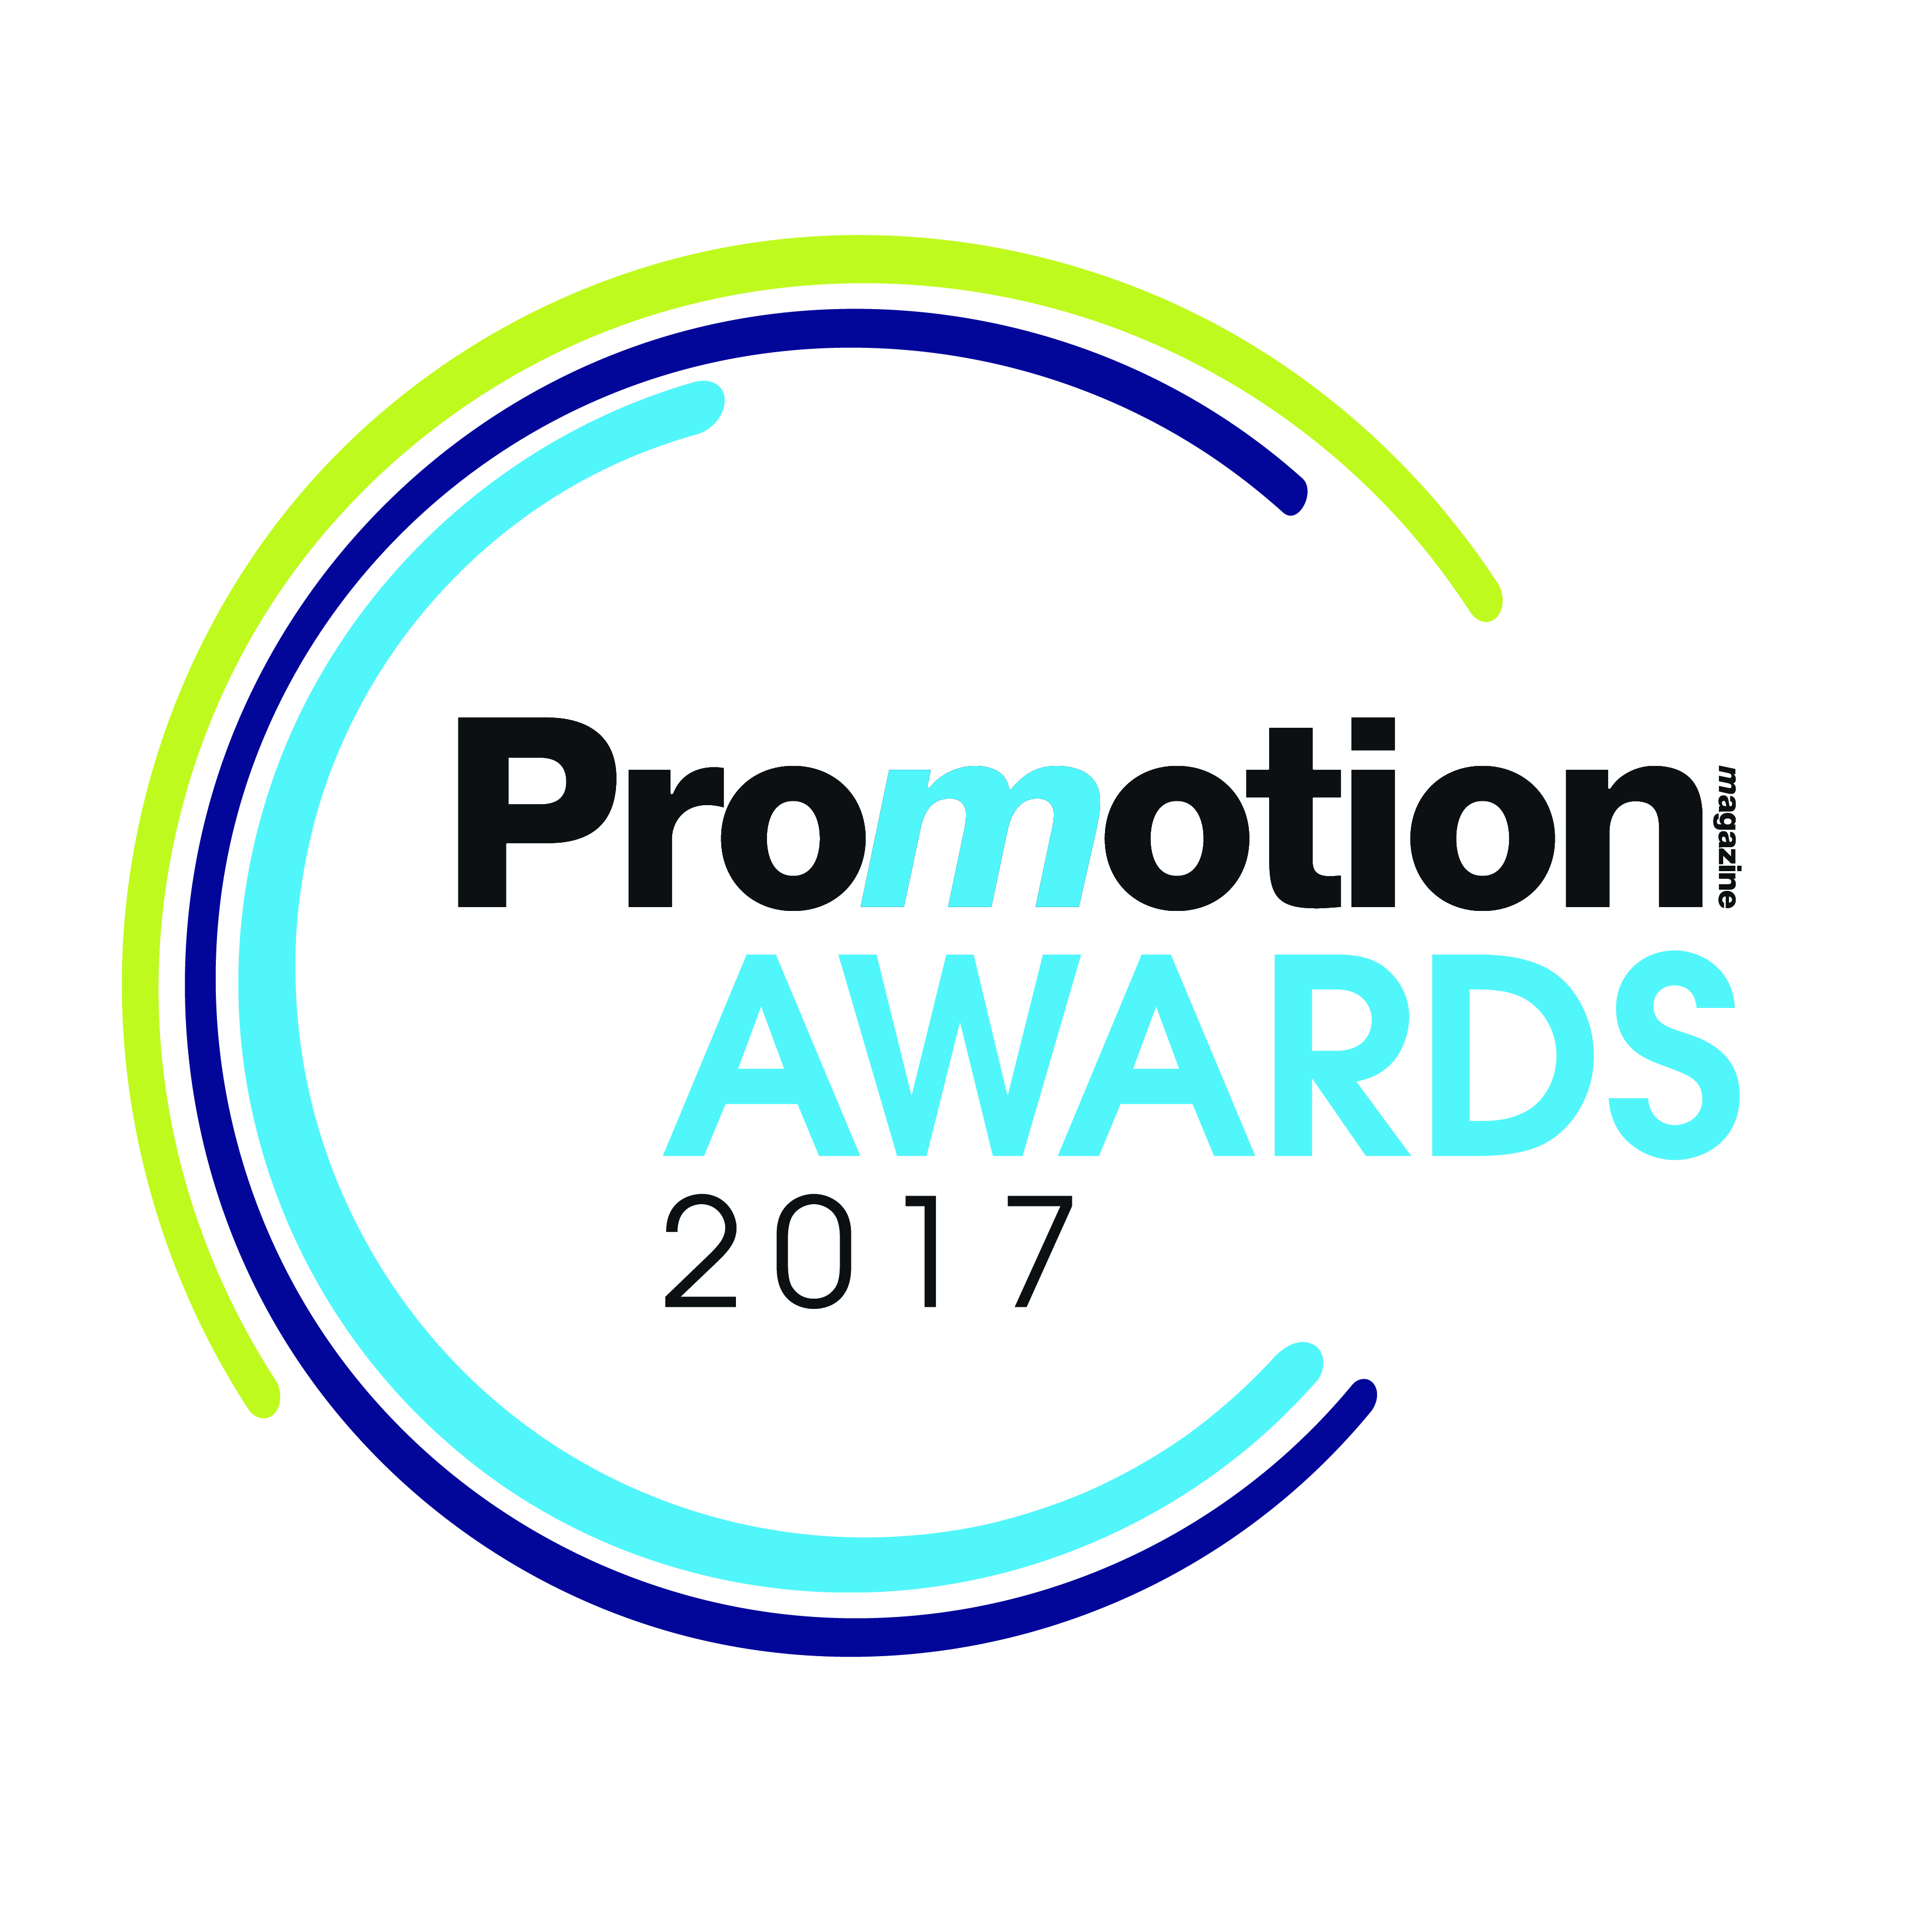 Prima edizione di Promotion Awards, iscrizioni fino al 30 giugno